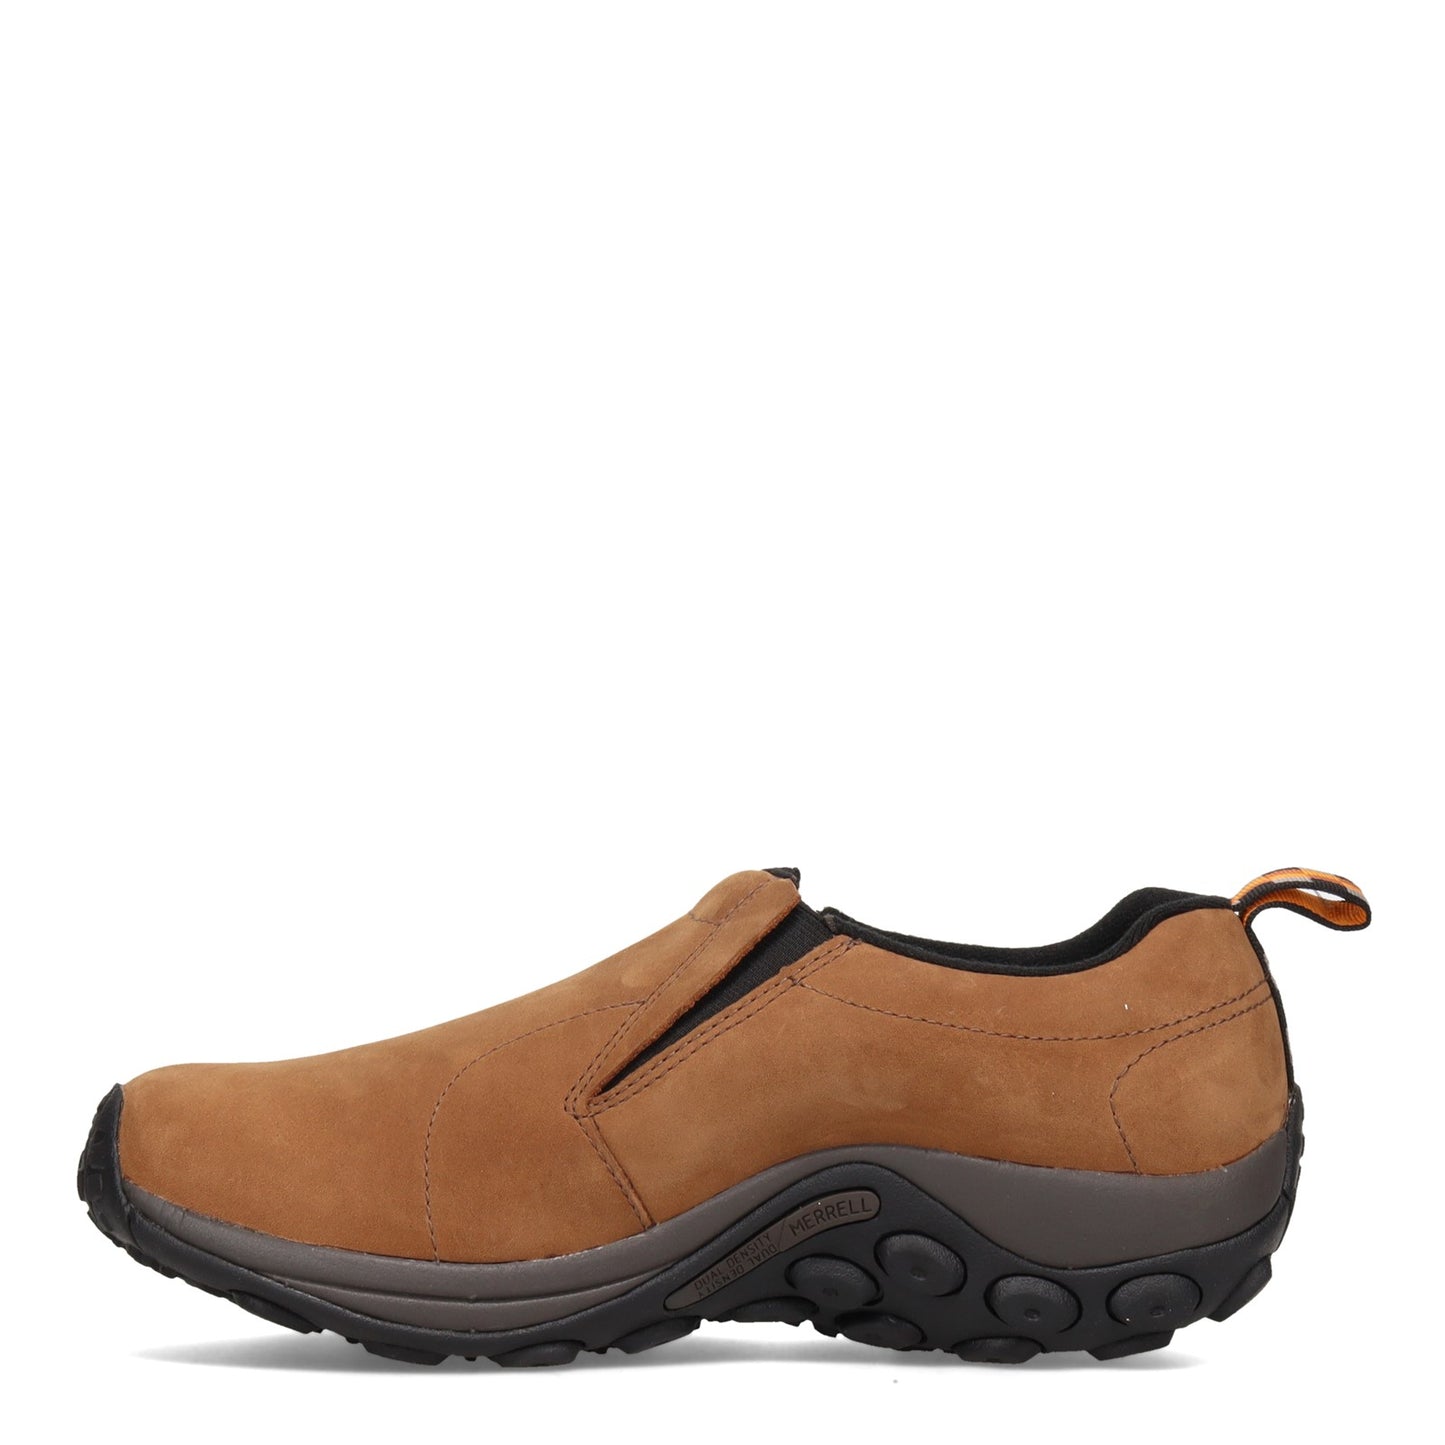 Peltz Shoes  Men's Merrell Jungle Moc Waterproof Slip-On - Wide Width BROWN NUBUCK J52927W